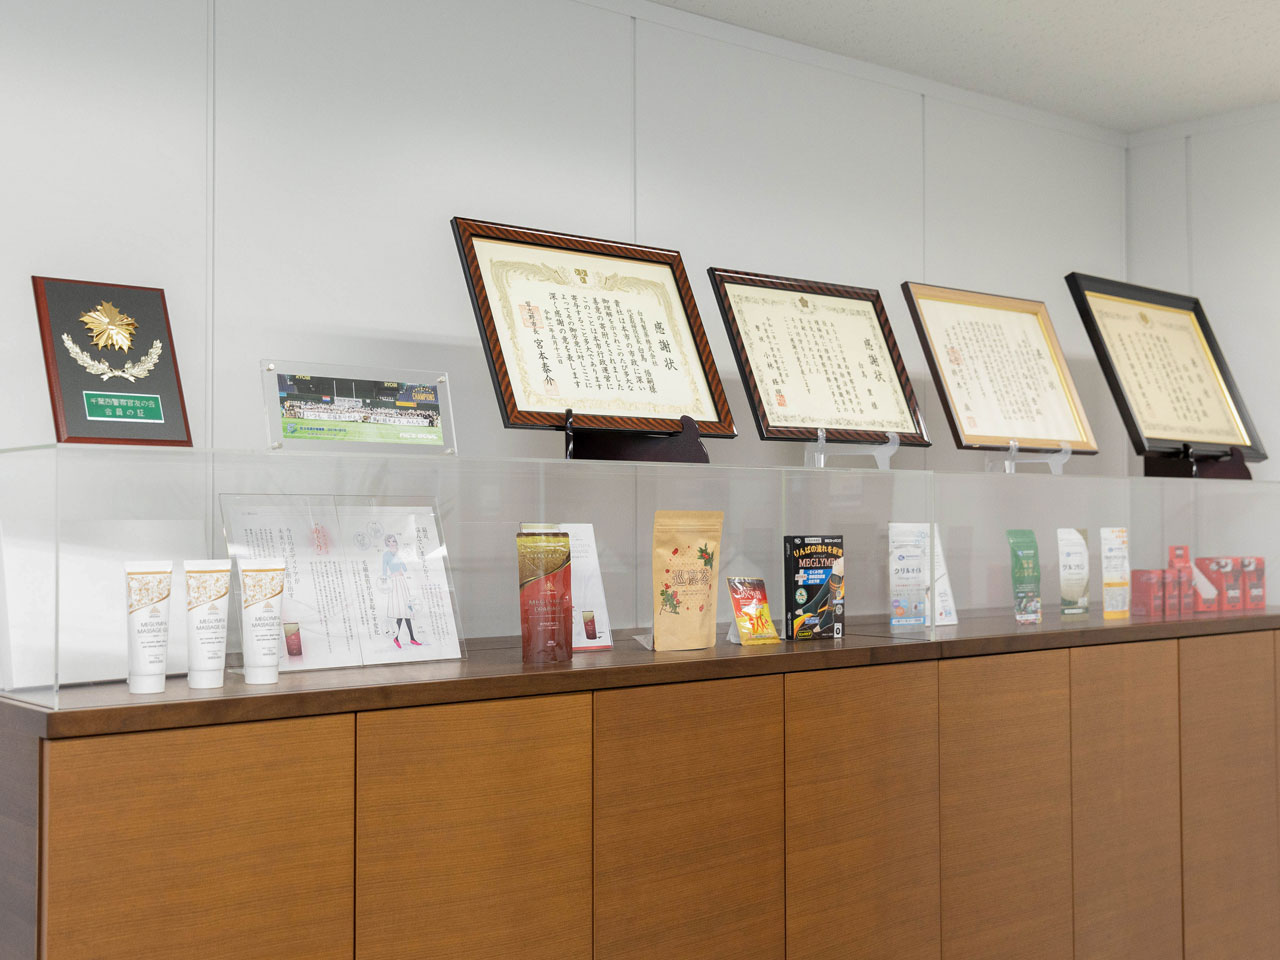 同社は、大正時代に日本で初めてカフェインの抽出に成功。以来、医薬品の原薬および中間体の受託開発・製造を中心に、機能性有機化合物や美容および健康食品の開発も手掛ける等、人々の健康的な生活に長年にわたって貢献してきた。